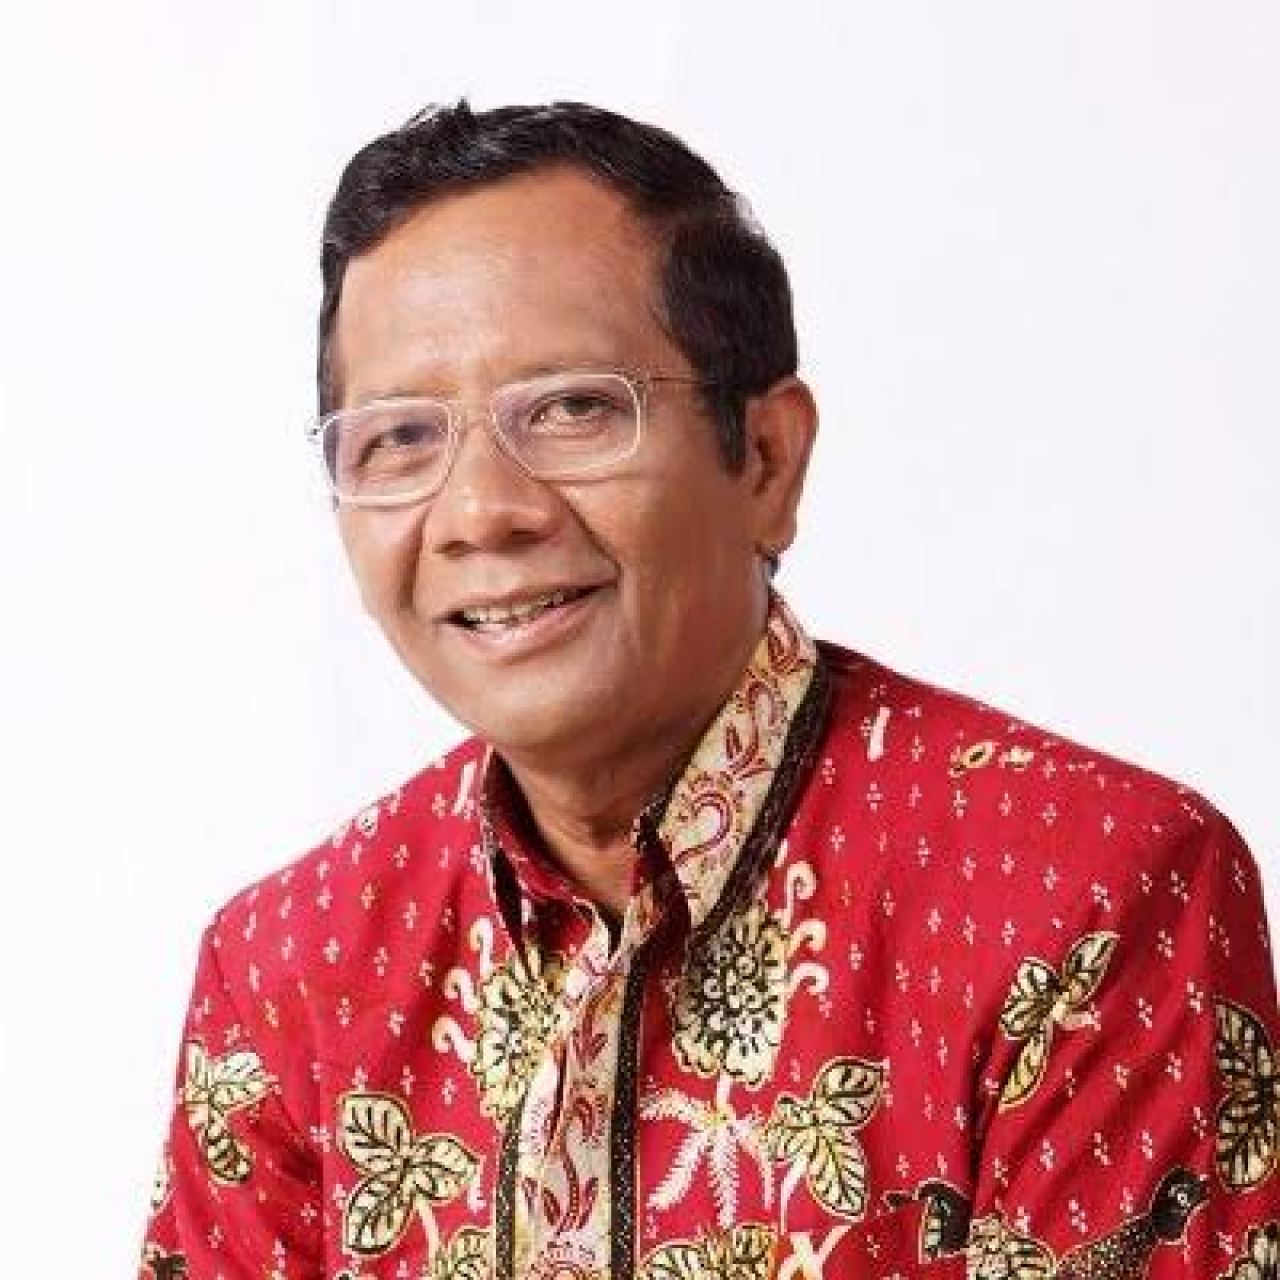 Mahfud: Saya Lebih Baik dari Prabowo, Saya Ikhlas